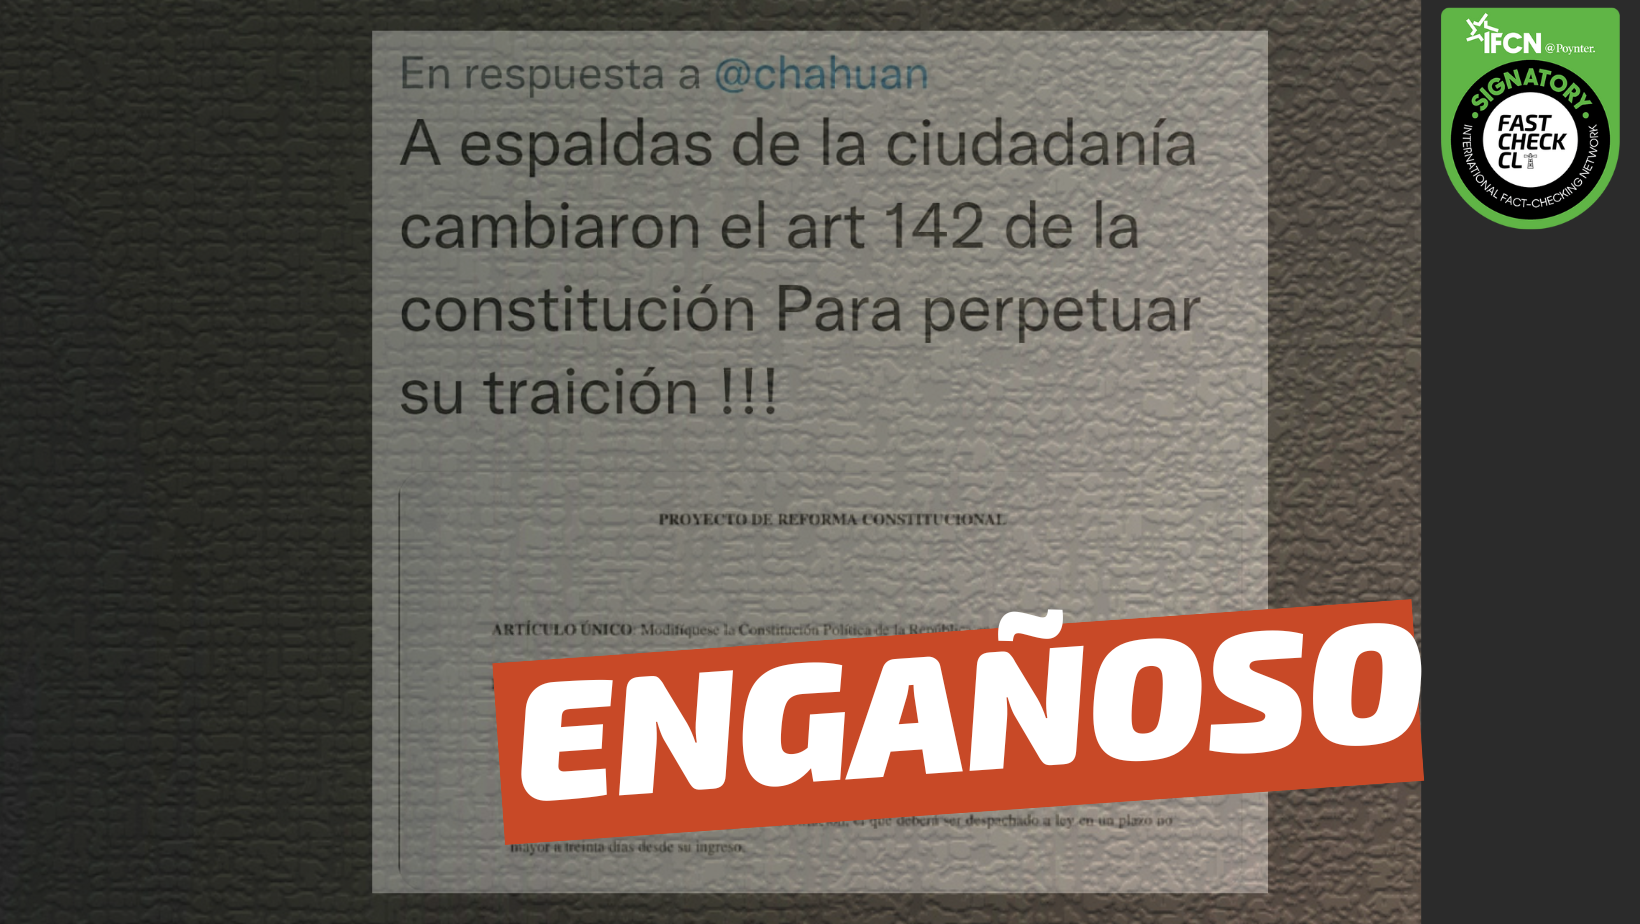 You are currently viewing (Imagen) “A espaldas de la ciudadanía cambiaron el artículo 142 de la Constitución (…)”: #Engañoso